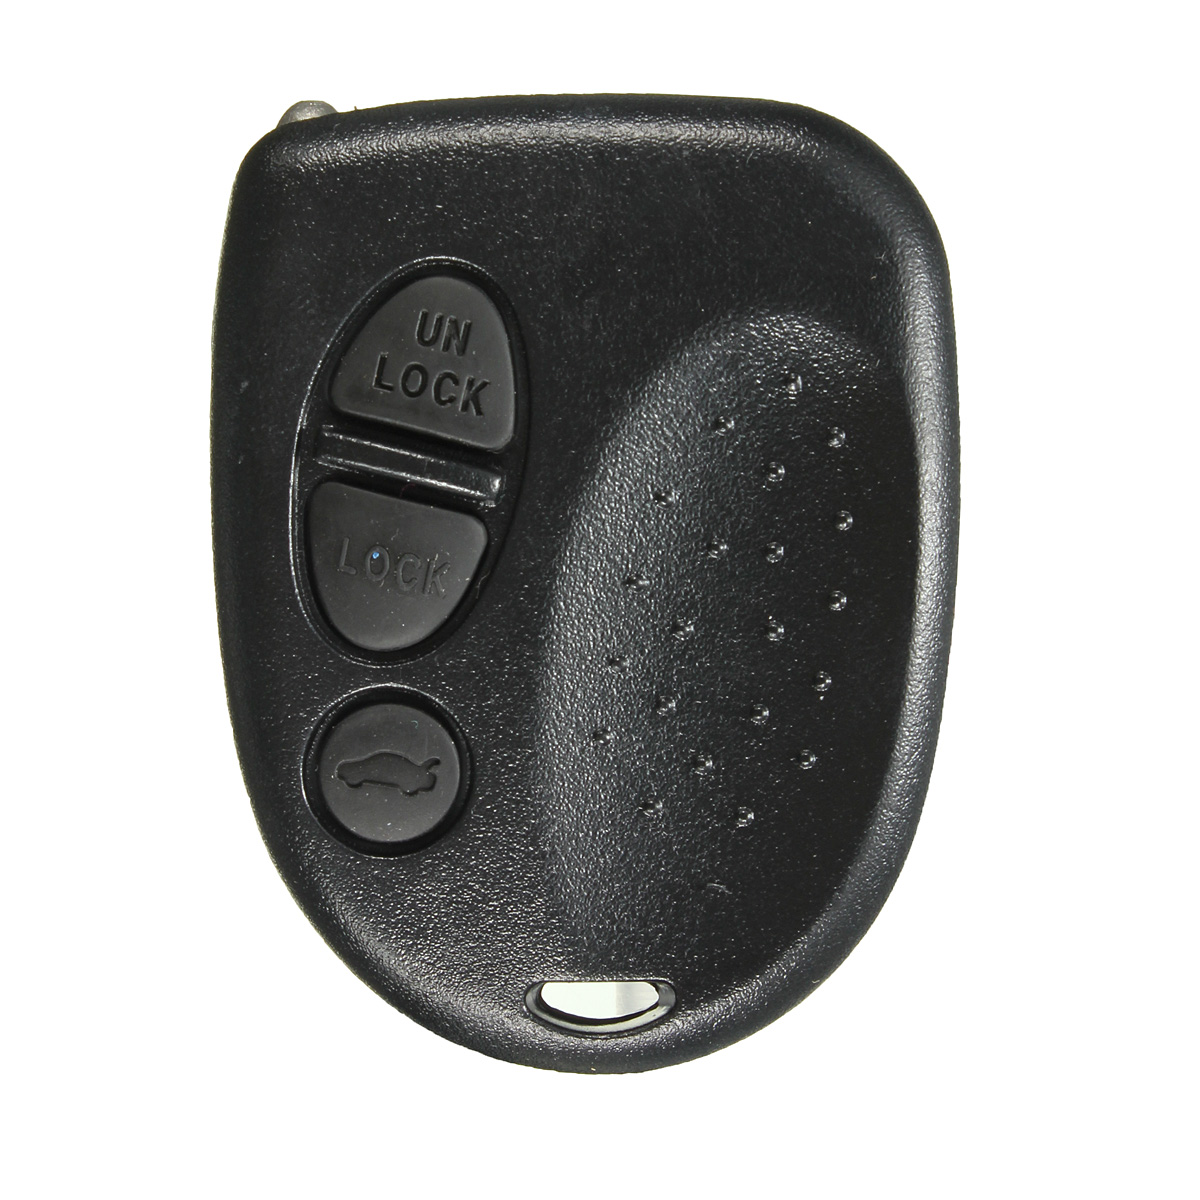 

3 Кнопка Авто Дистанционный Ключ для головы только для Holden Commodore VS VR VT VX VY VZ